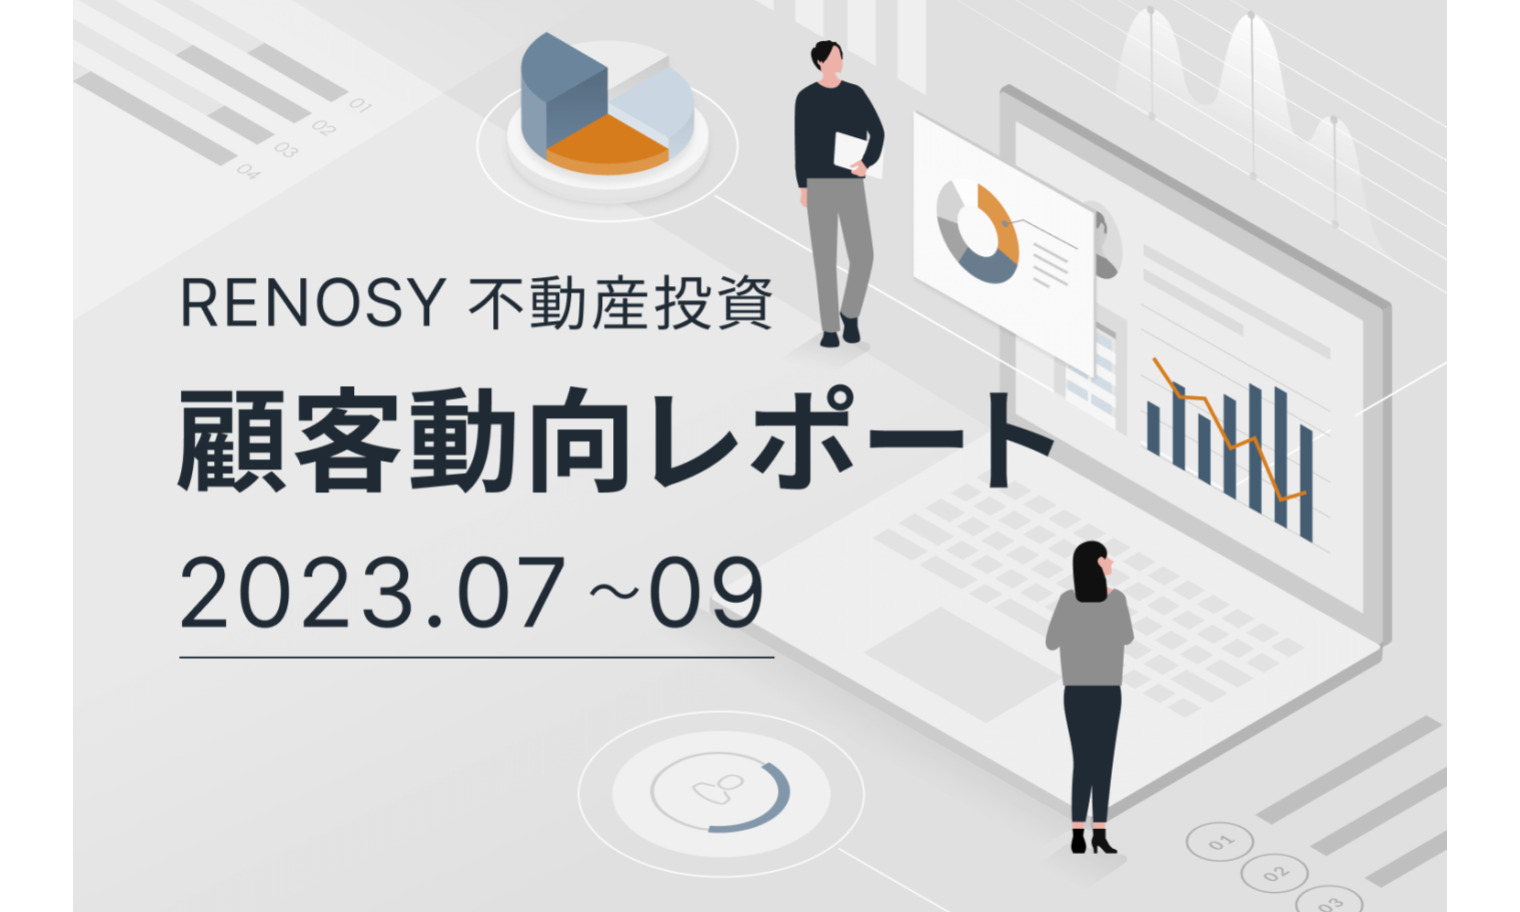 ネット不動産投資のRENOSY、顧客動向レポート 2023年7〜9⽉を公開 